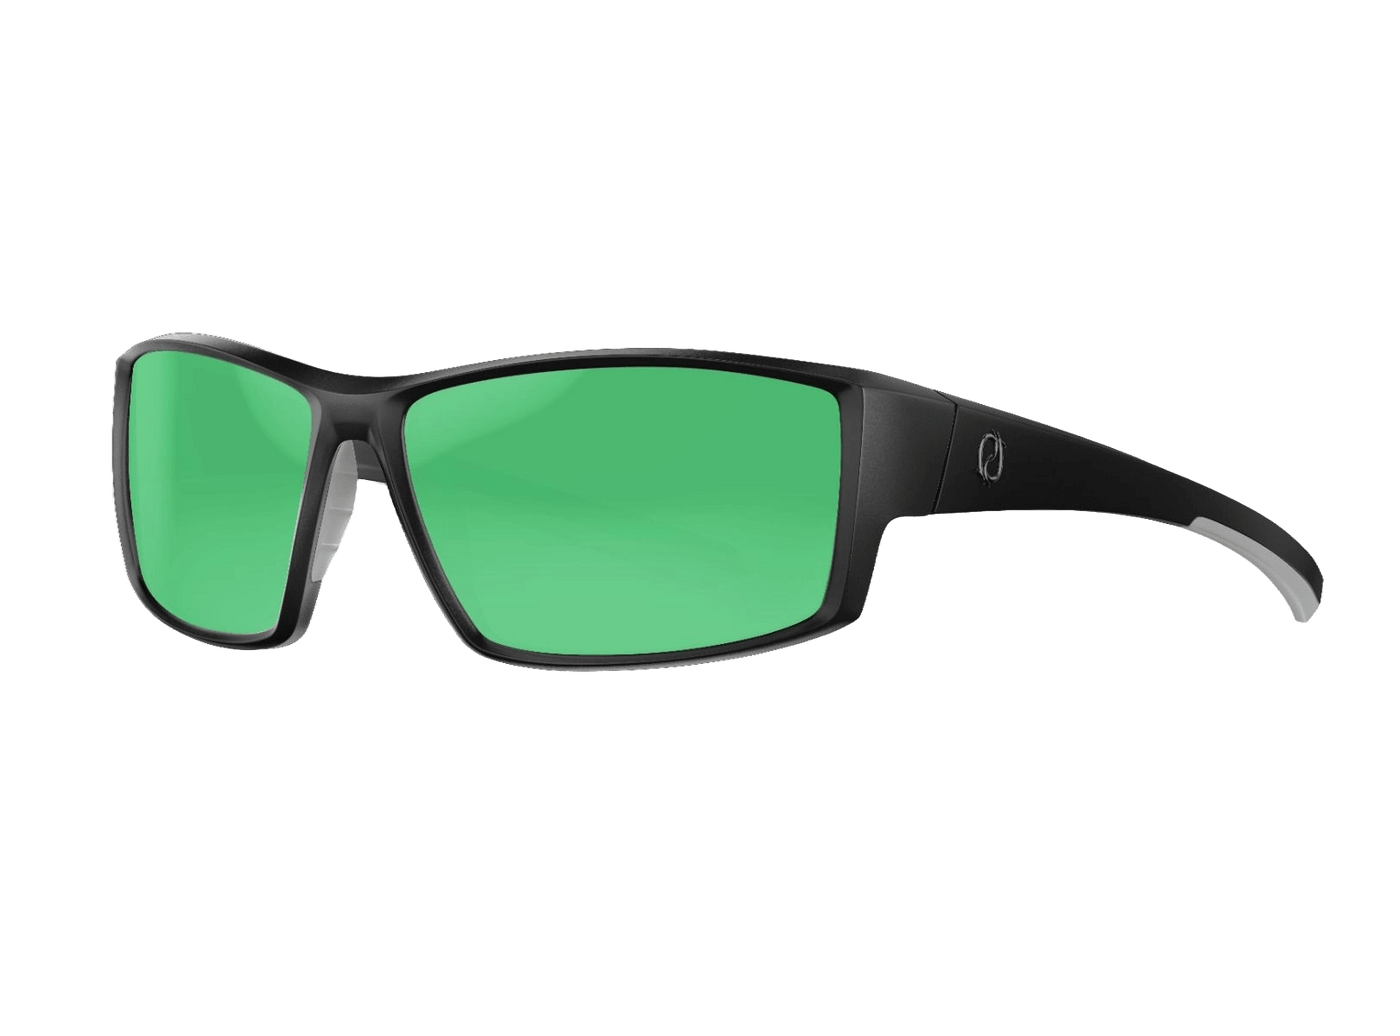 Redtail Republic Sunglasses Accessories Redtail Republic Baffin Matte Black RECON Green Mirror